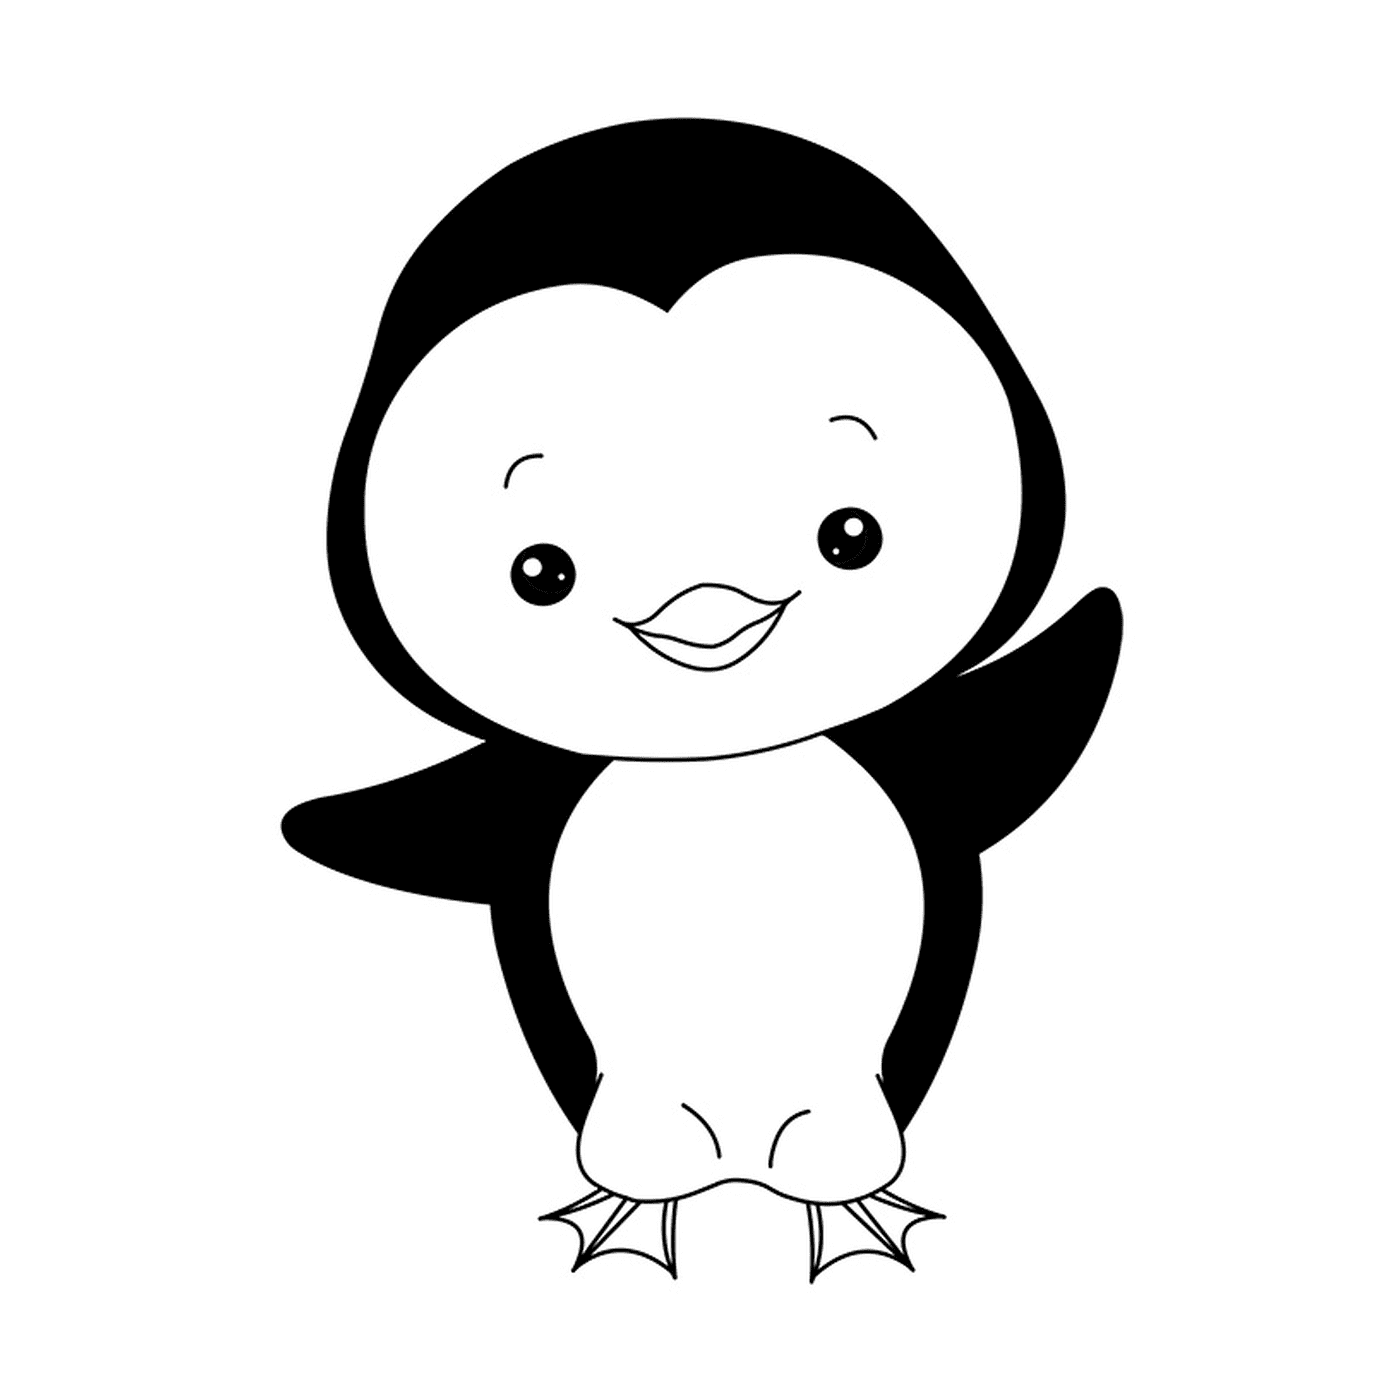  Imagem de um pinguim bebê 